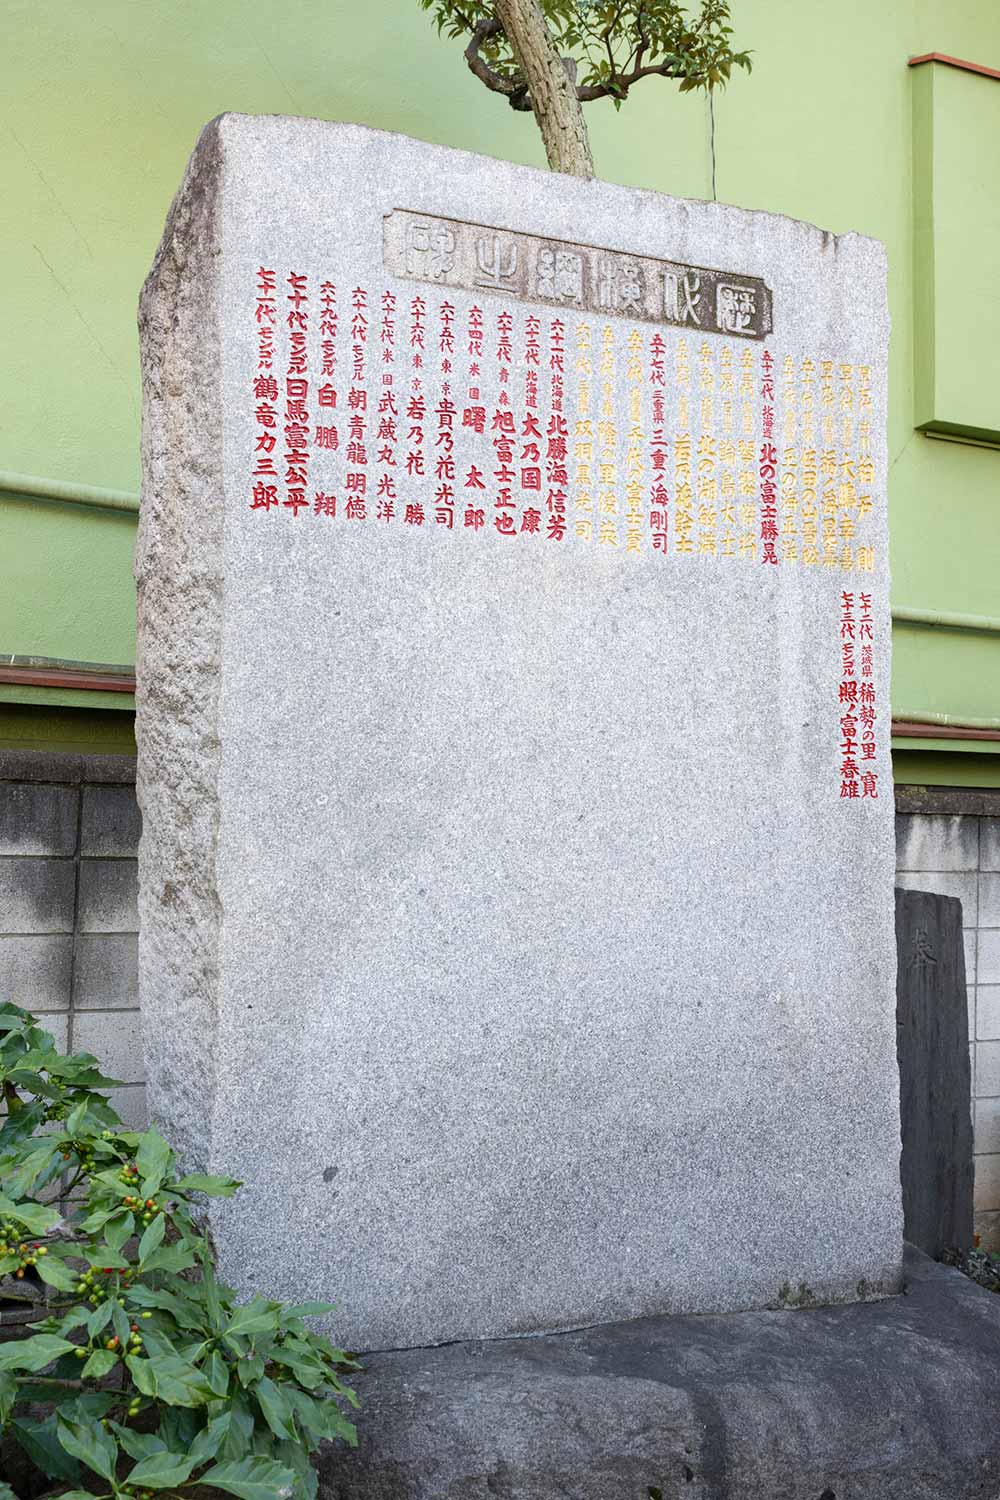 歴代横綱の名を刻んだ碑があり取材に訪れた日も相撲ファンが興味深く眺めていた。